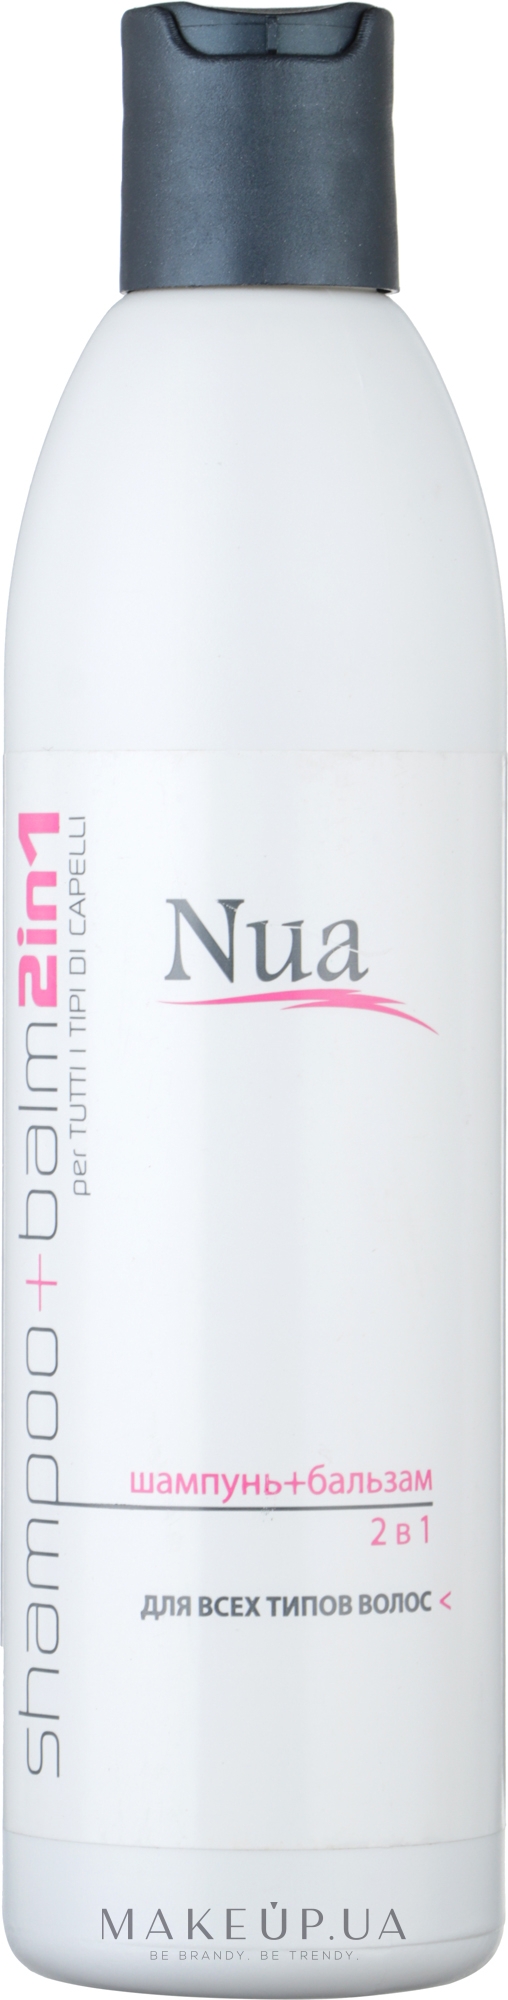 Шампунь і бальзам 2 в 1 для всіх типів волосся - Nua Shampoo + Balm 2 in 1 — фото 250ml